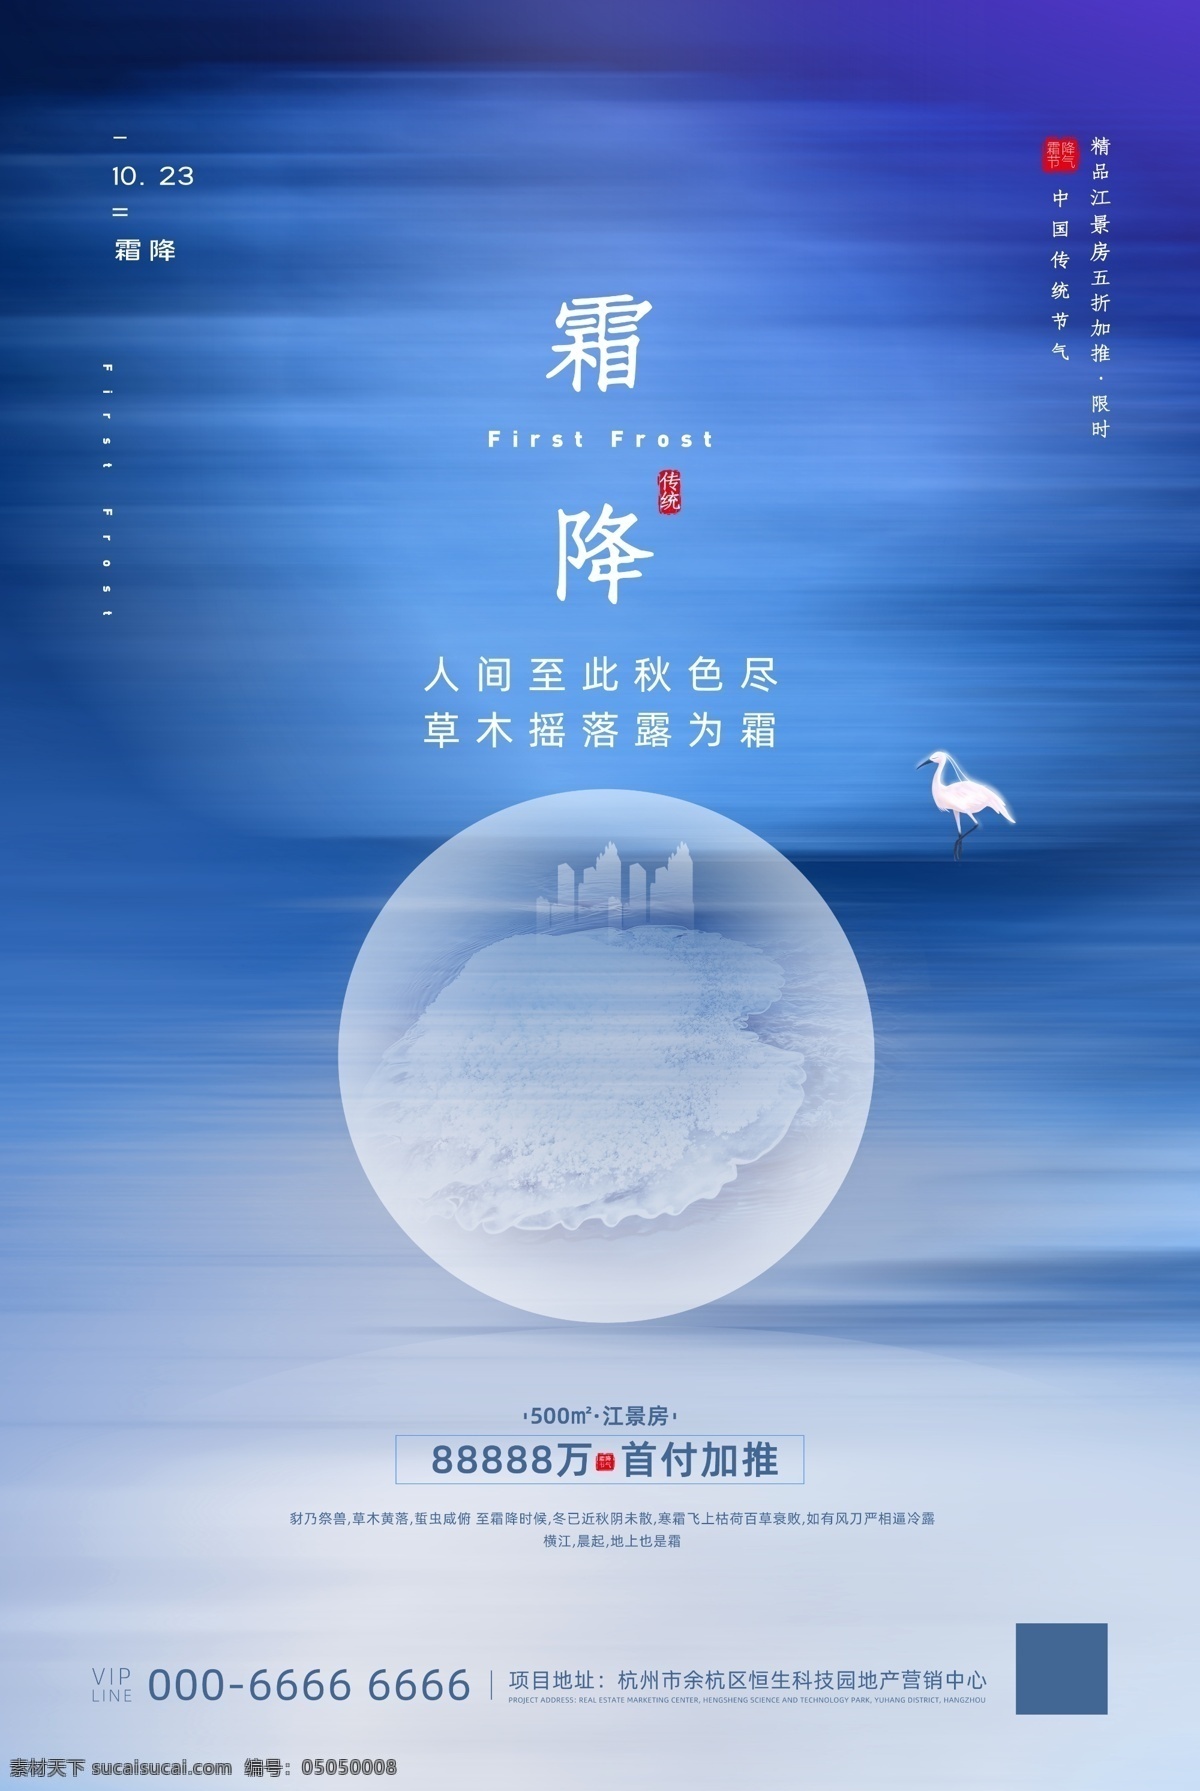 蓝色 极 简 风霜 降 节气 地产 海报 仙鹤 霜降 建筑 01海报画面